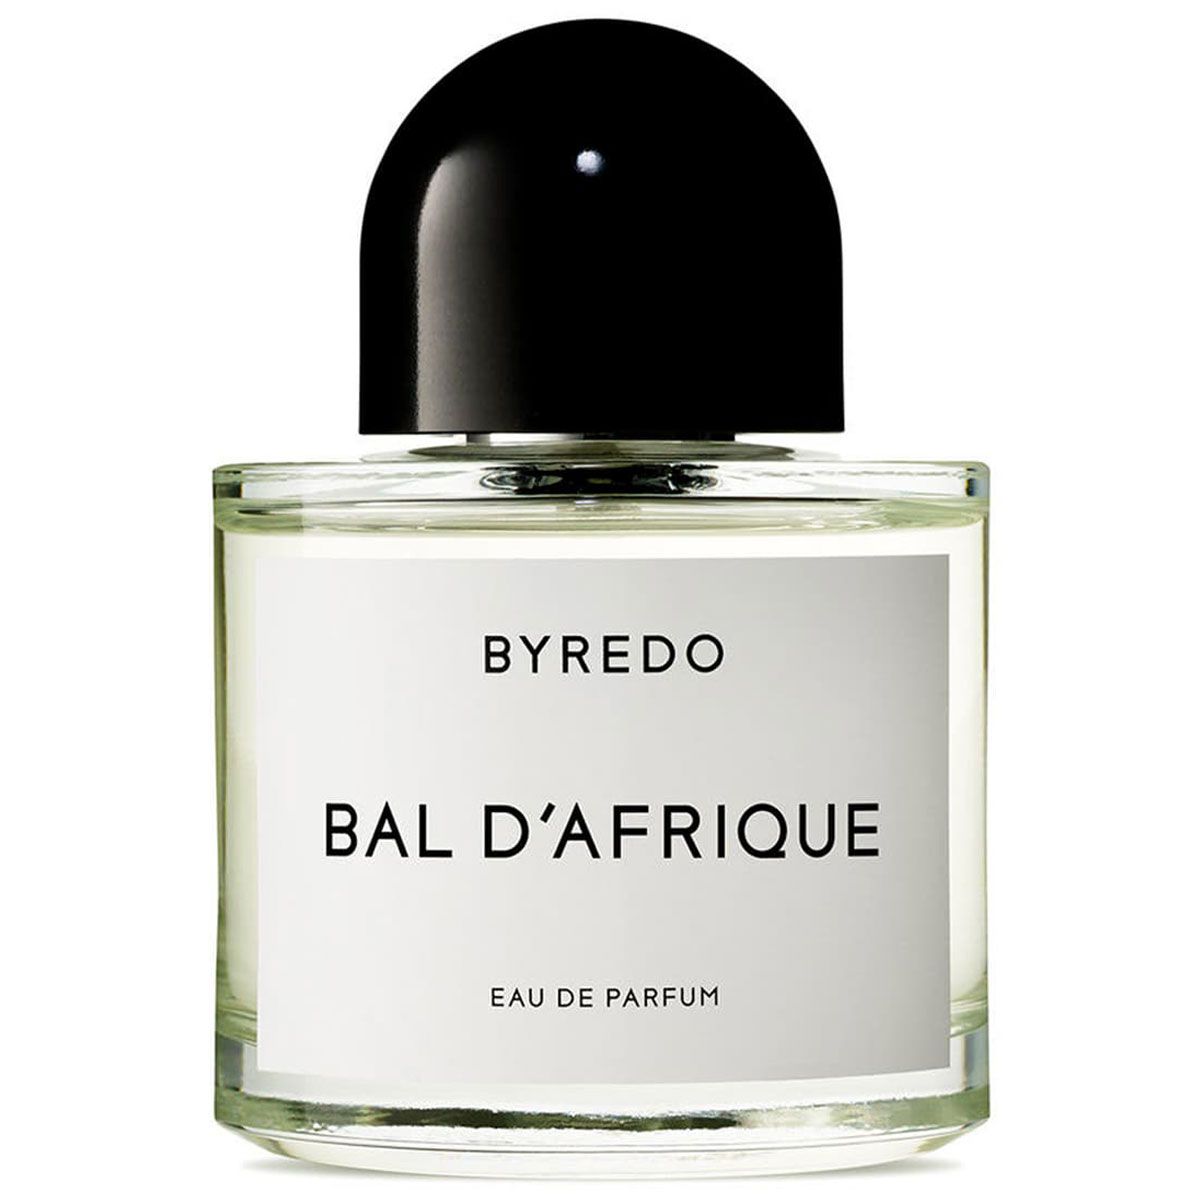  Byredo Bal D'afrique Eau de Parfum 